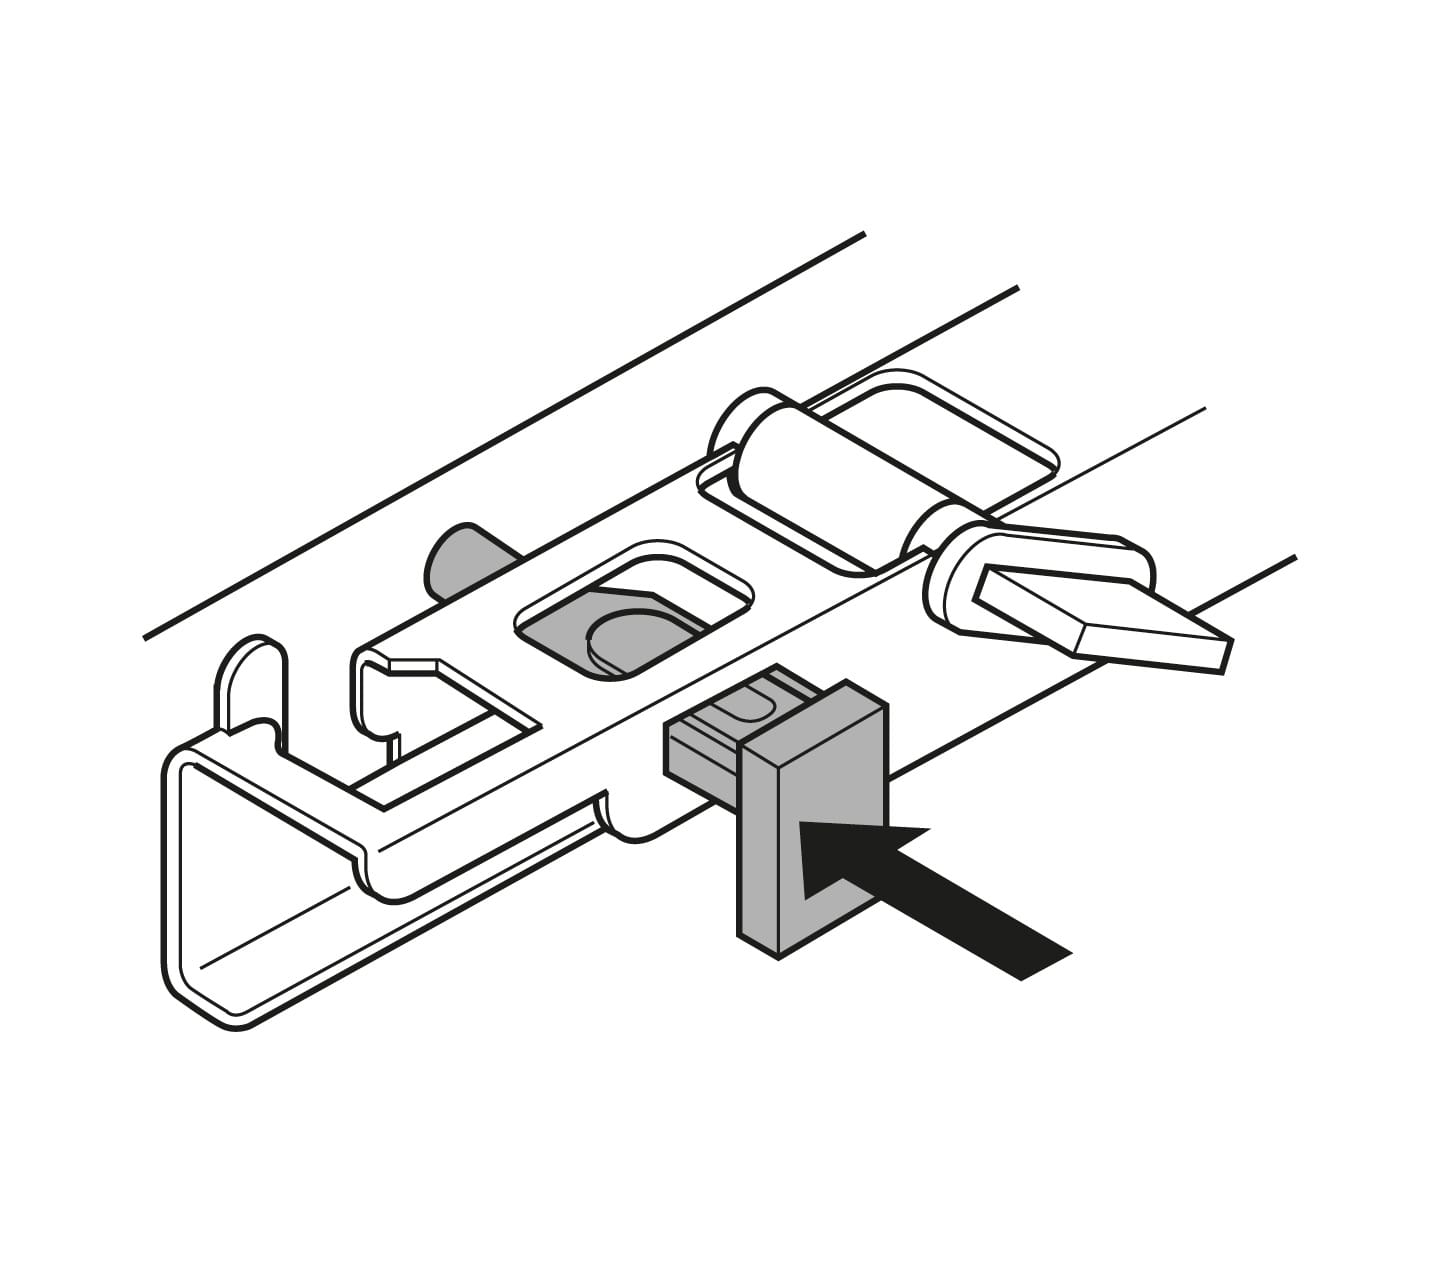 blum undermount drawer slides installation instructions